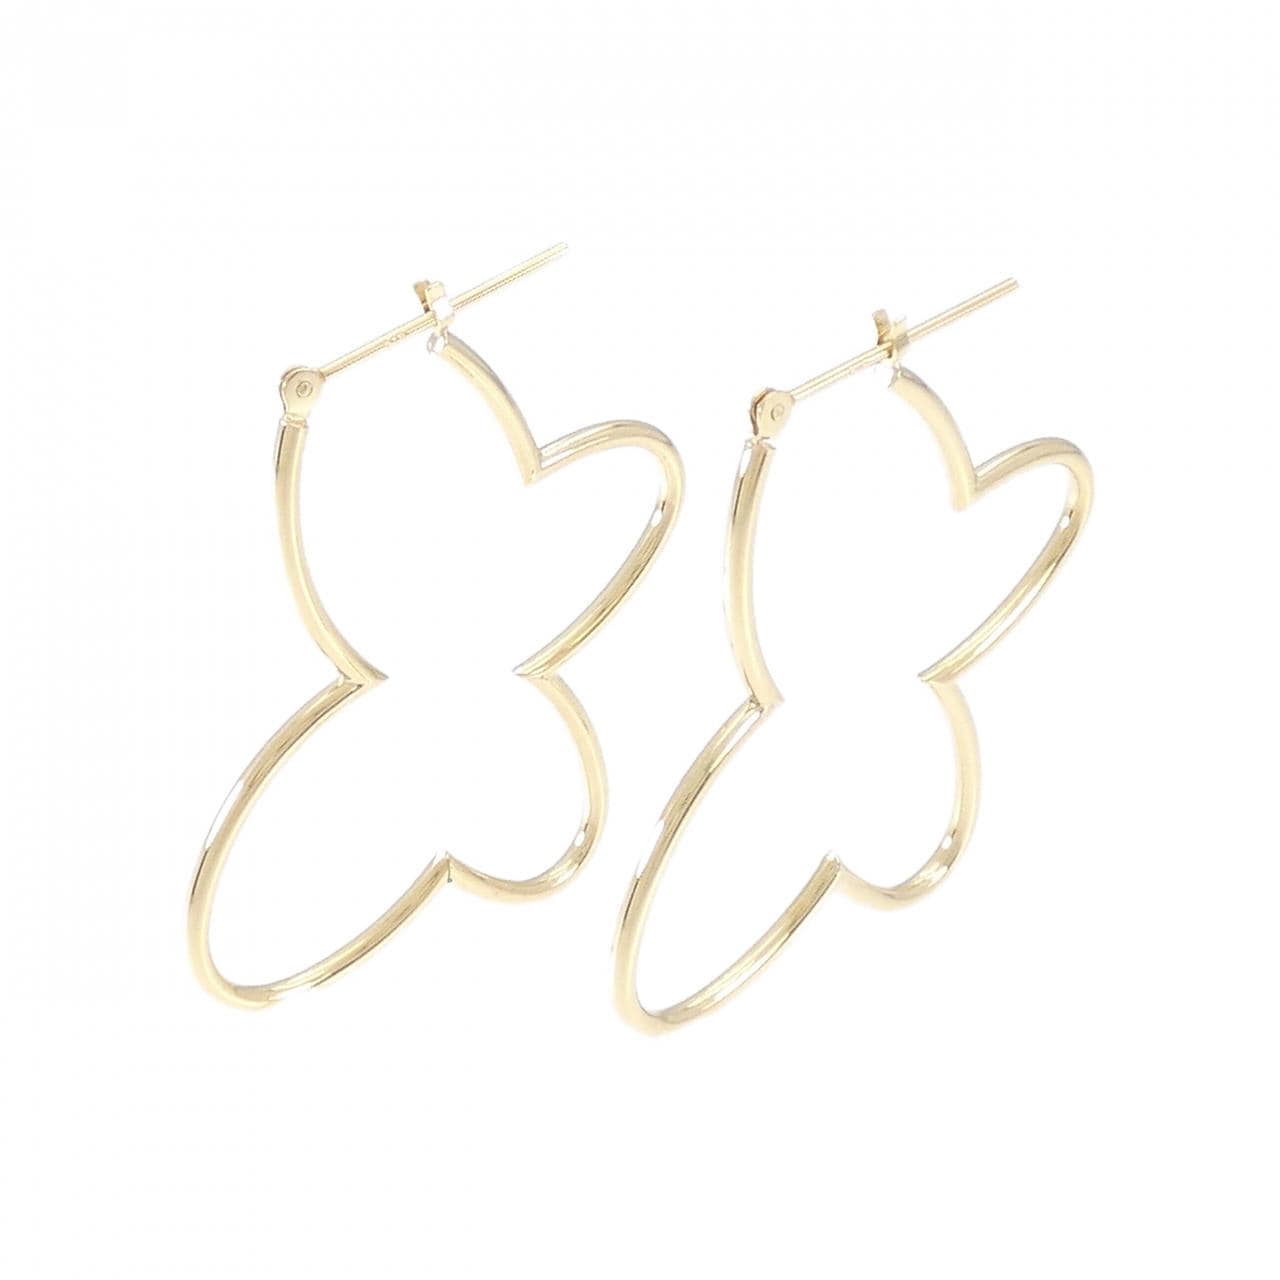 K18YG butterfly earrings